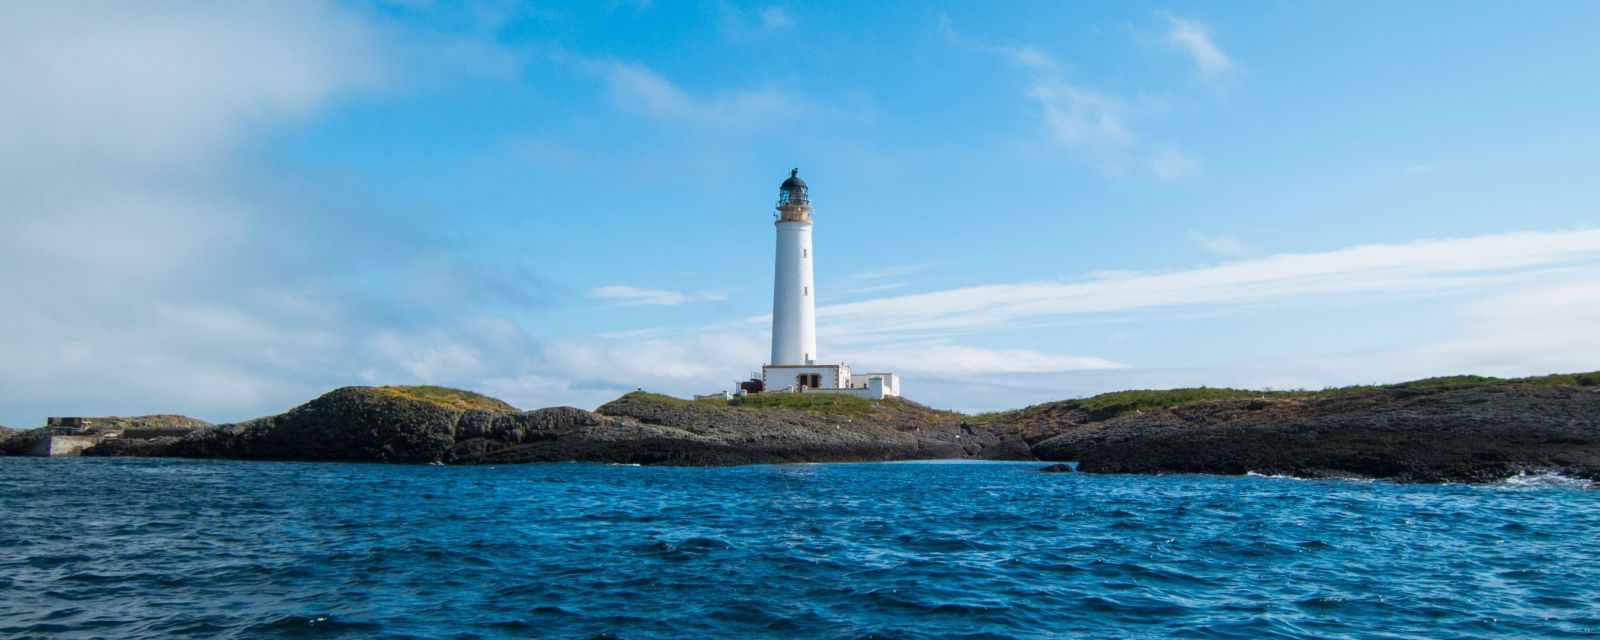 Hyskeir Island and Lighthouse